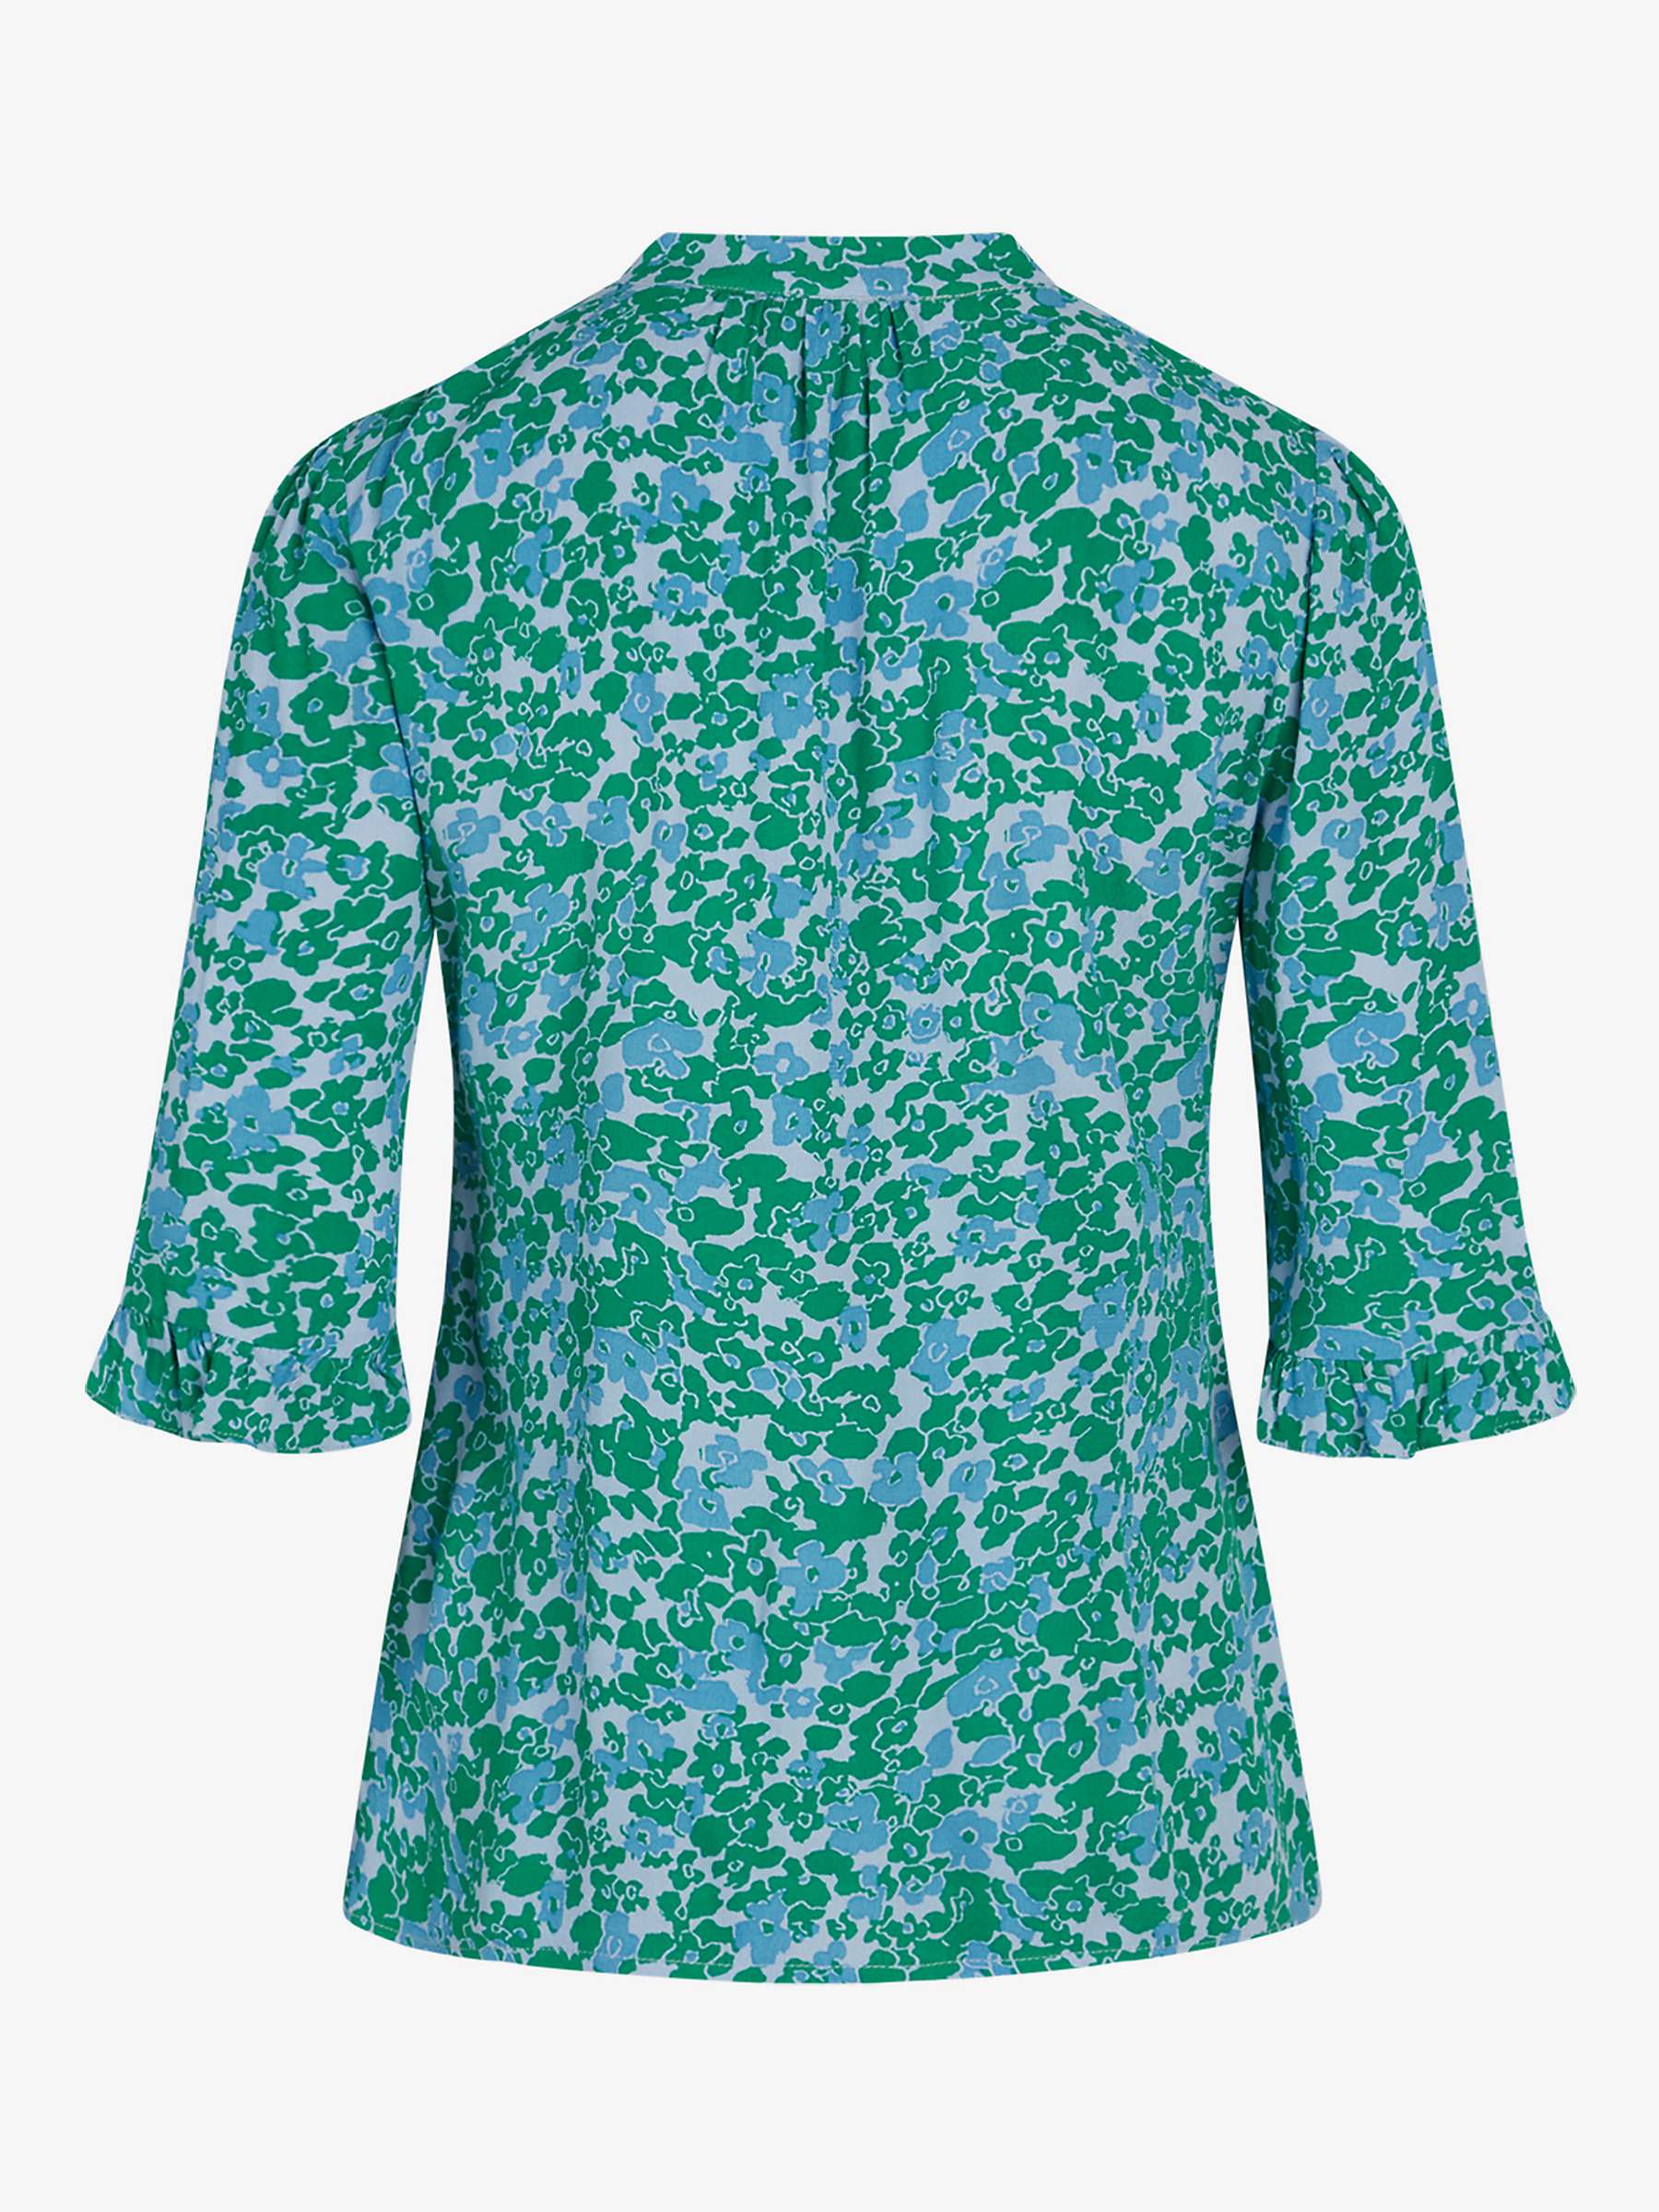 Buy Noa Noa Bella Floral Shirt, Blue/Green Online at johnlewis.com